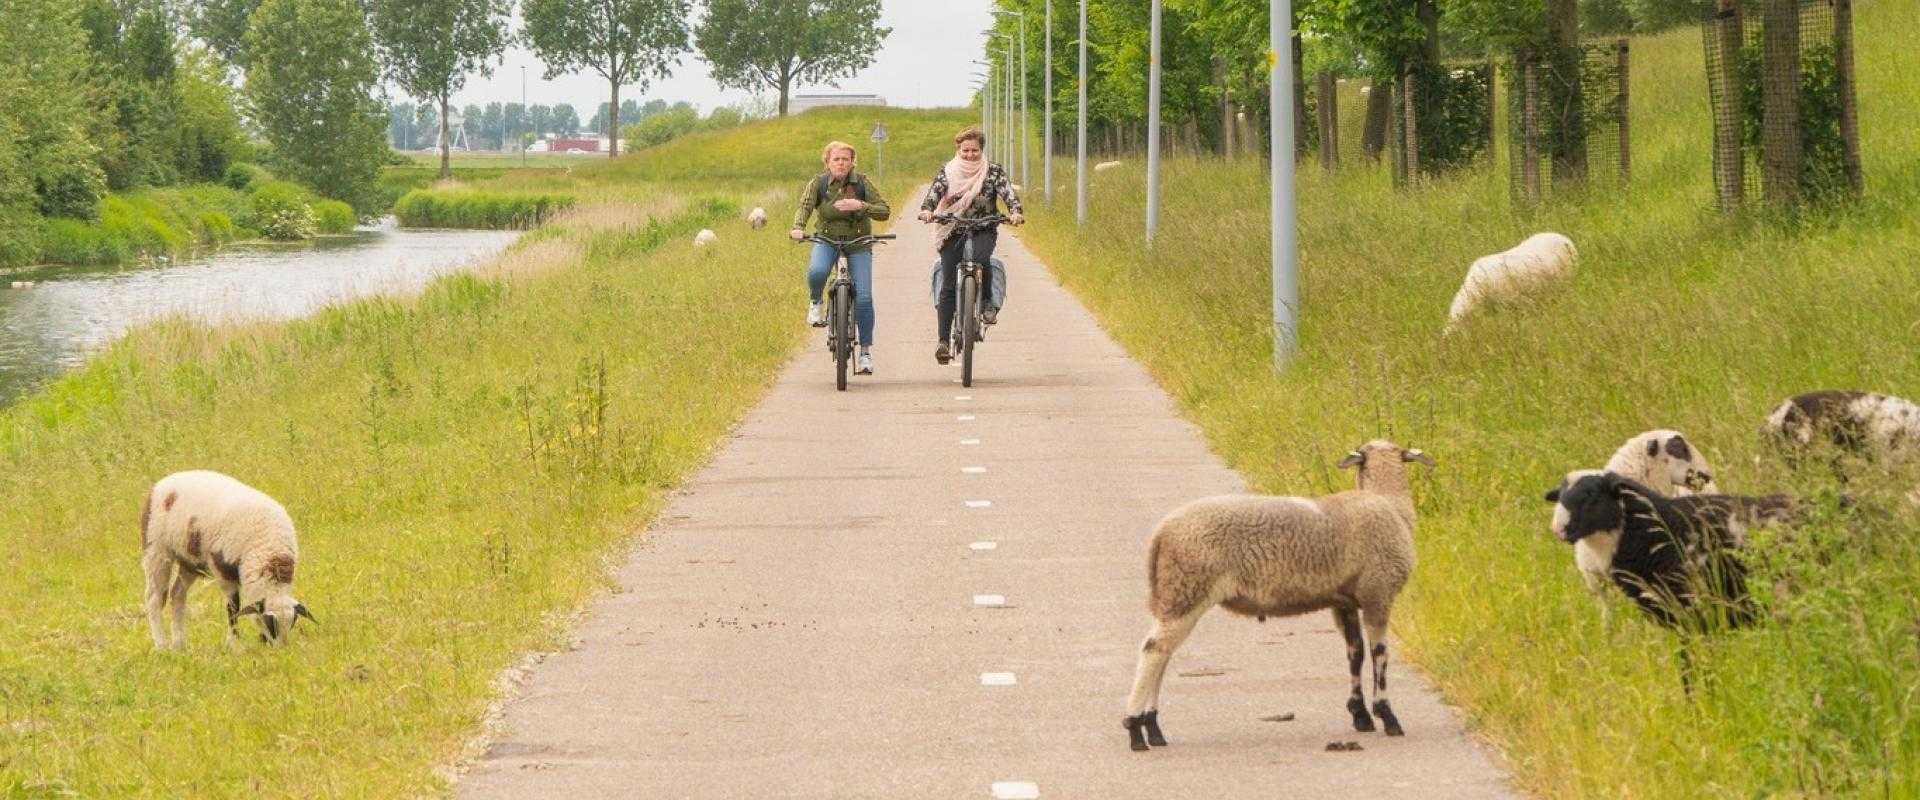 fietsers op Stelling van Amsterdam